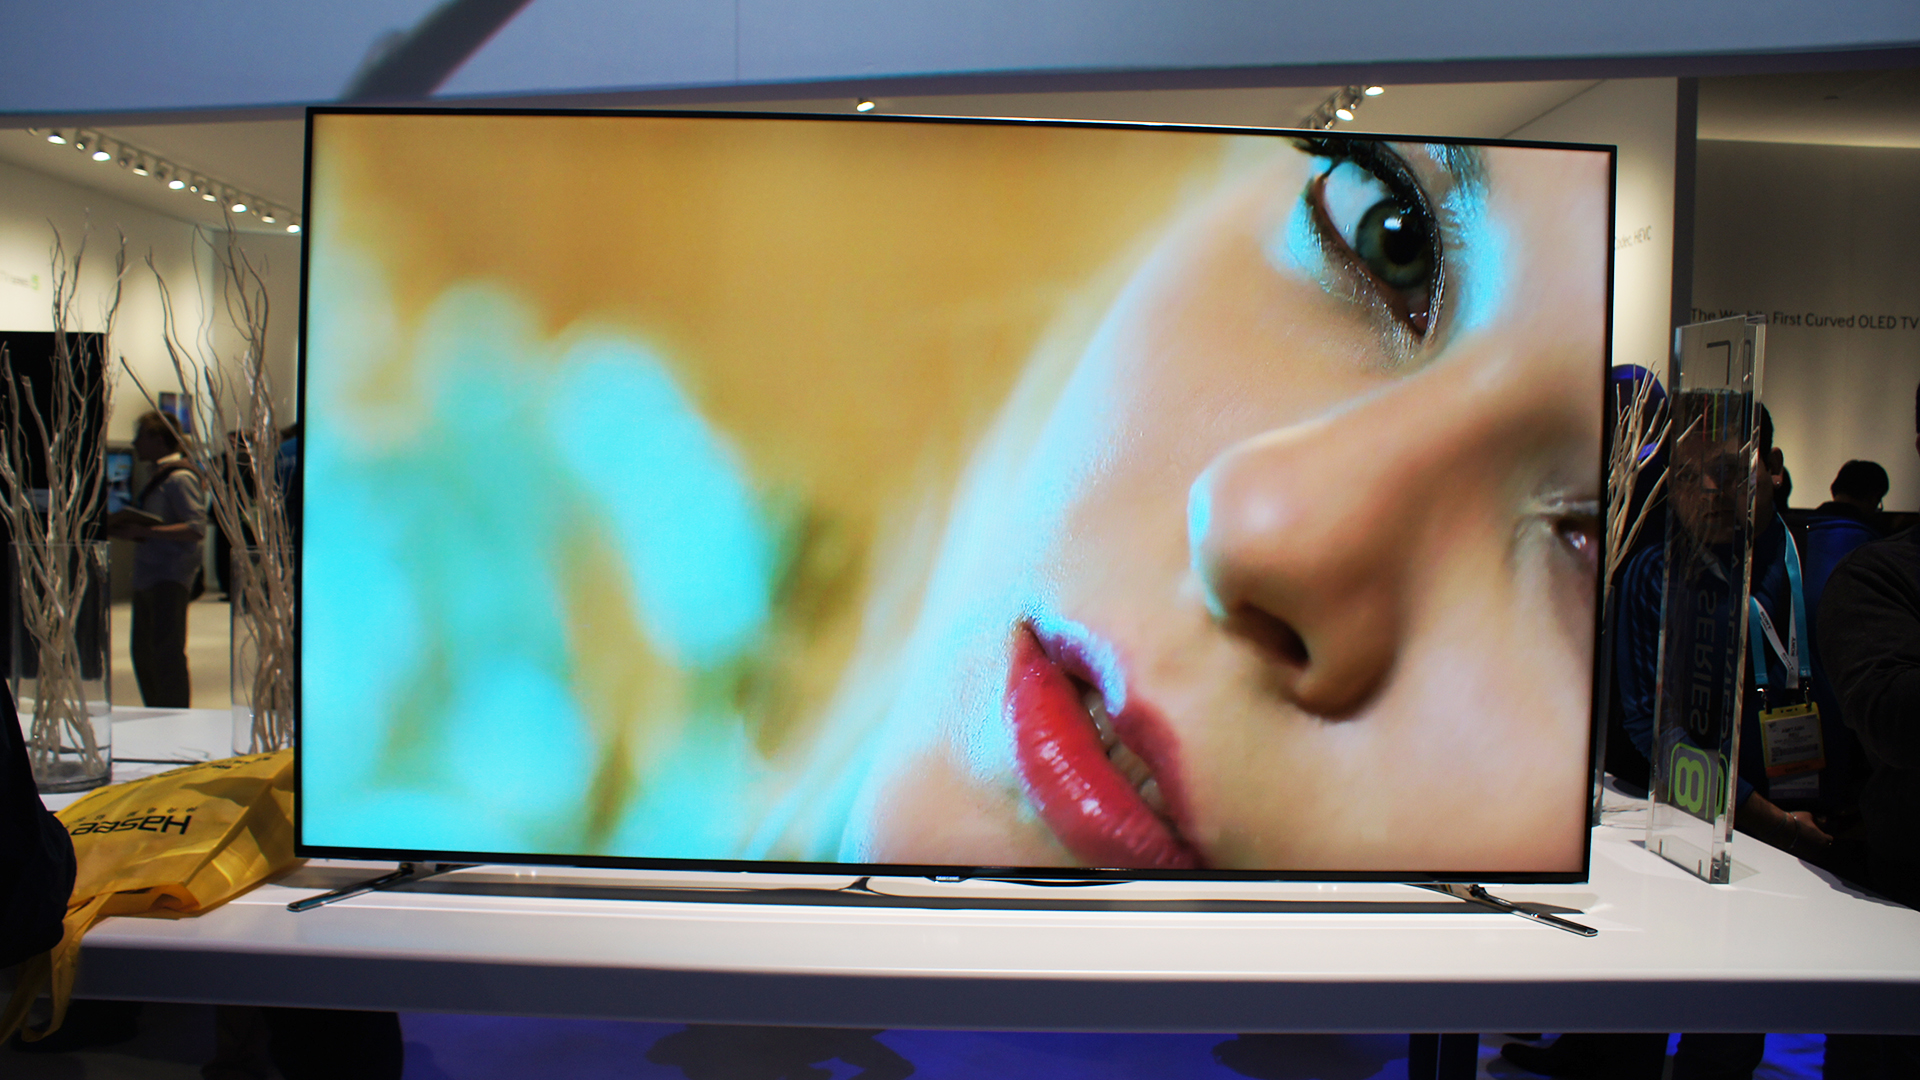 Новый телевизор видео. Samsung Smart TV f8000. Телевизор LG 8000. Телевизор цветного изображения с жидкокристаллическим экраном. Изображение на экране телевизора.